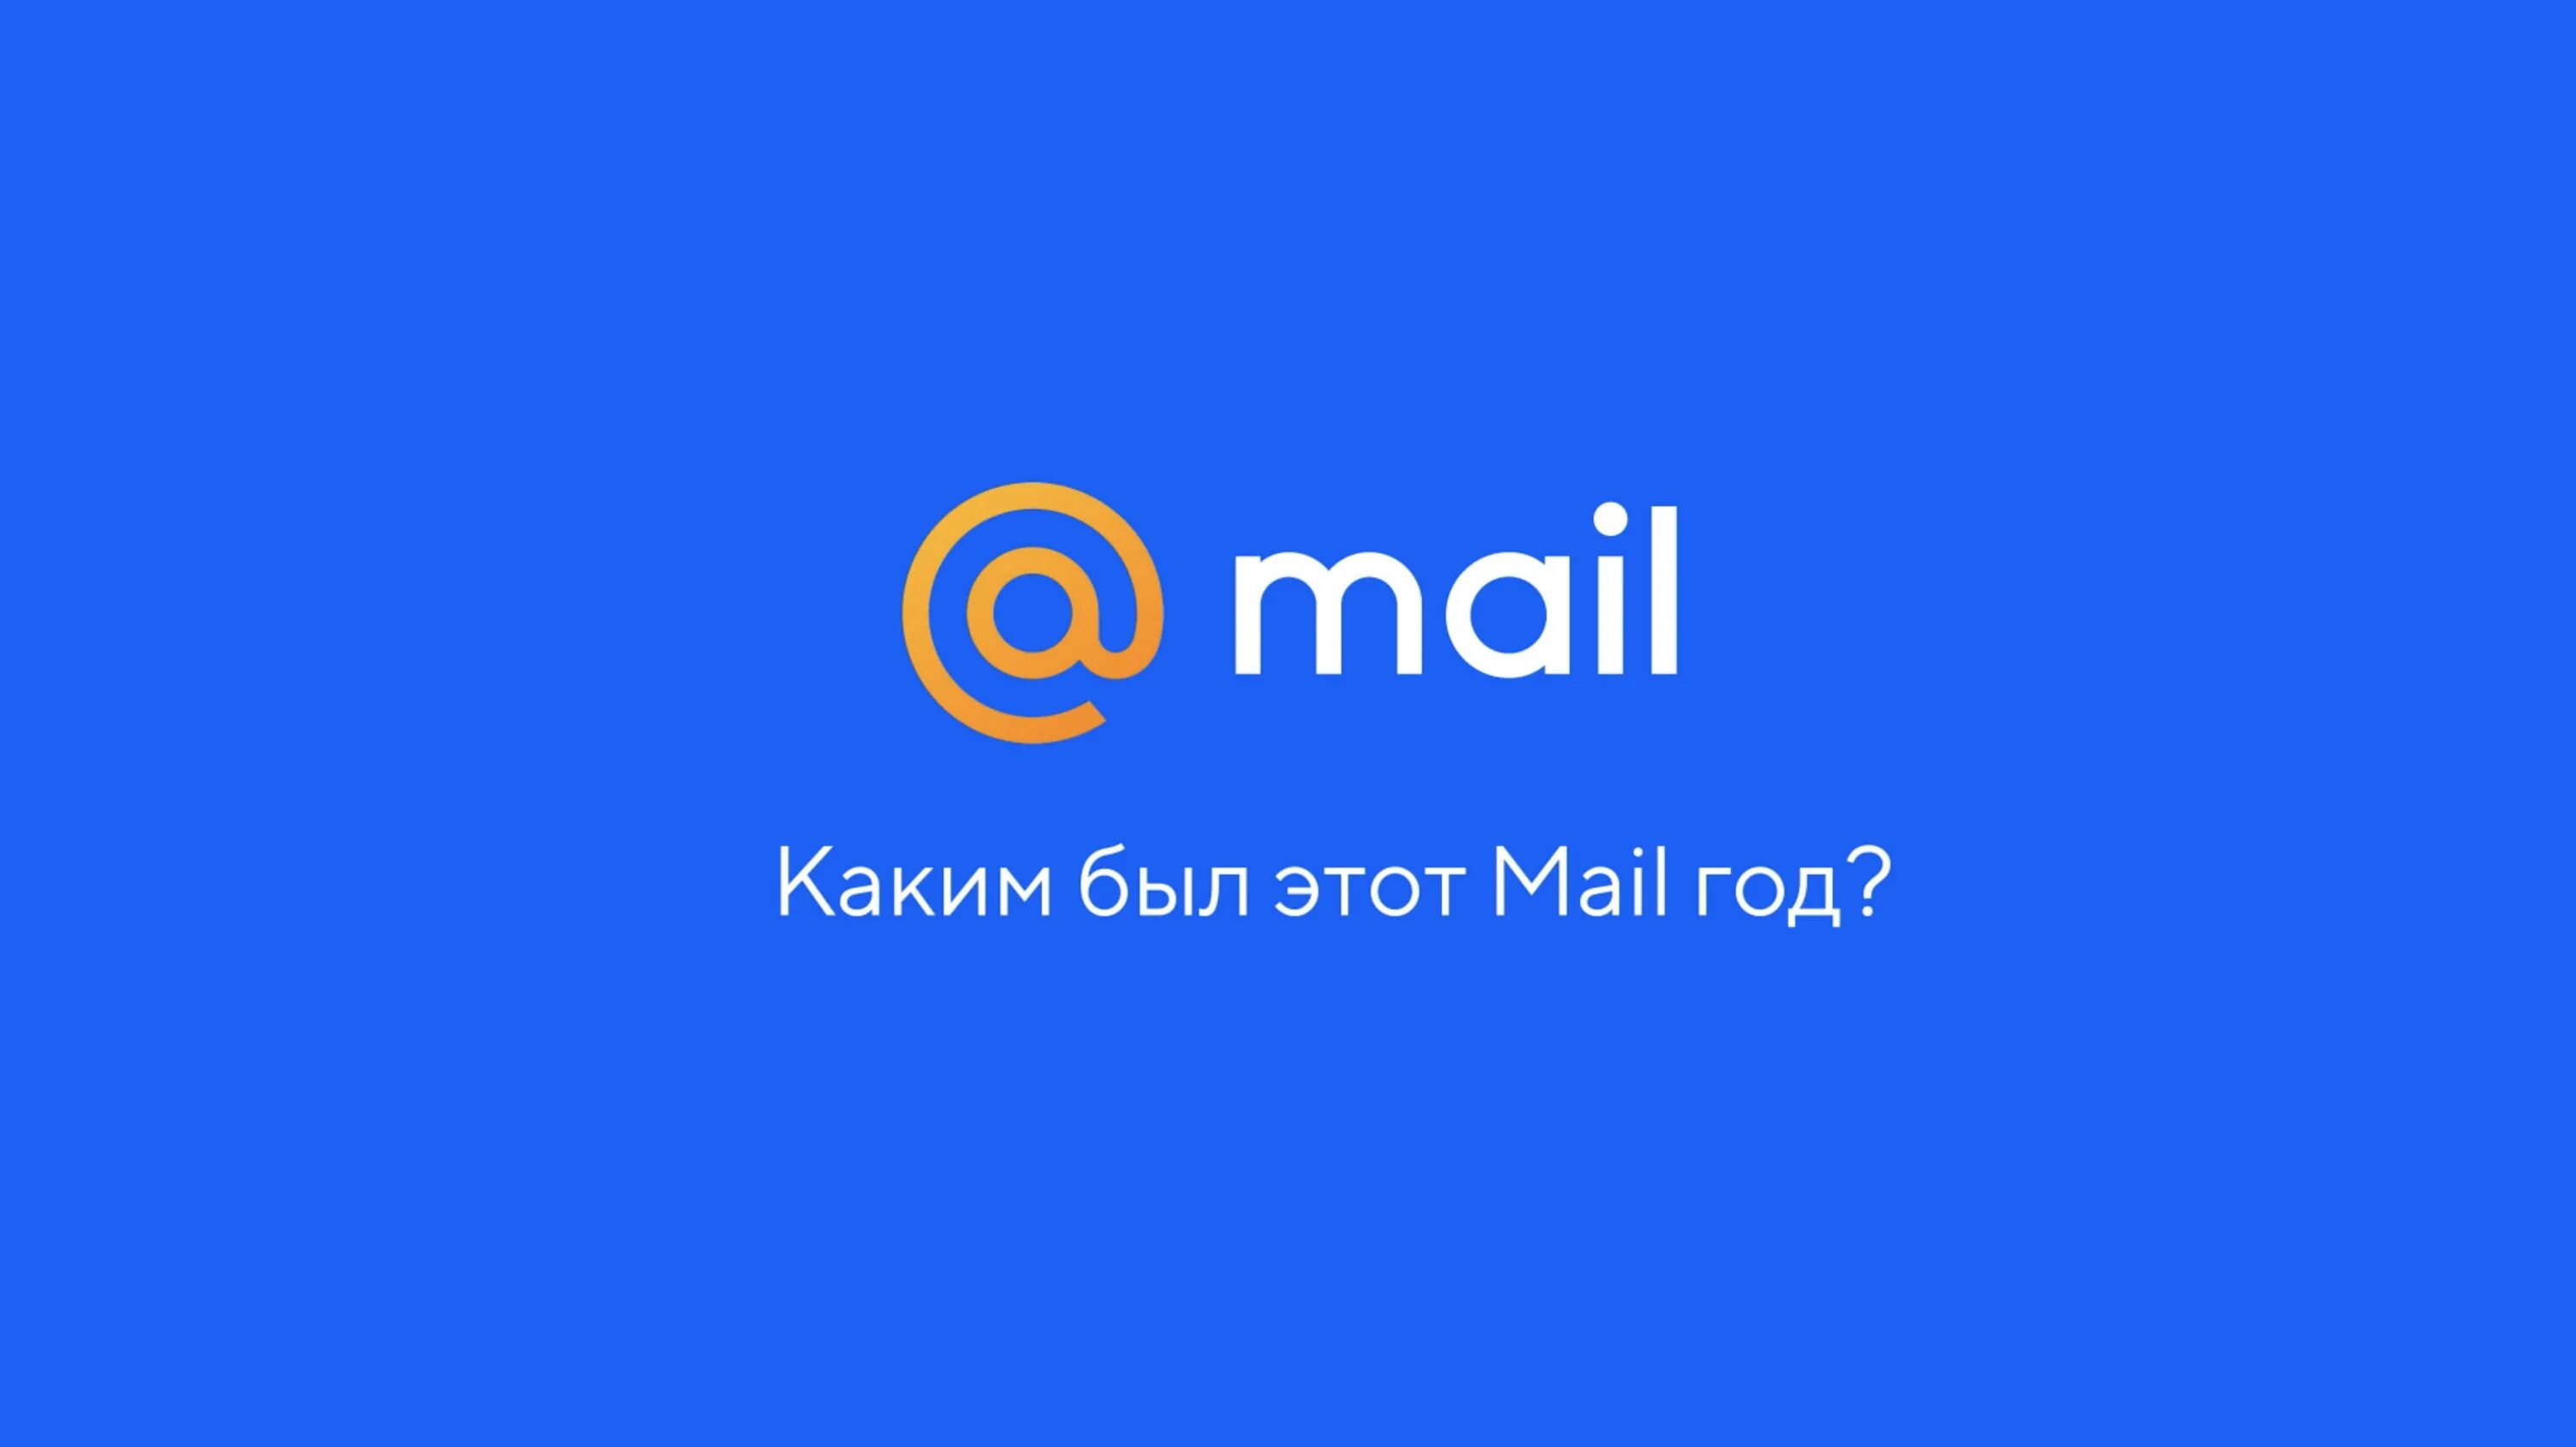 Mail. Почта майл. Mia l. Mai ly. Sharing mail ru